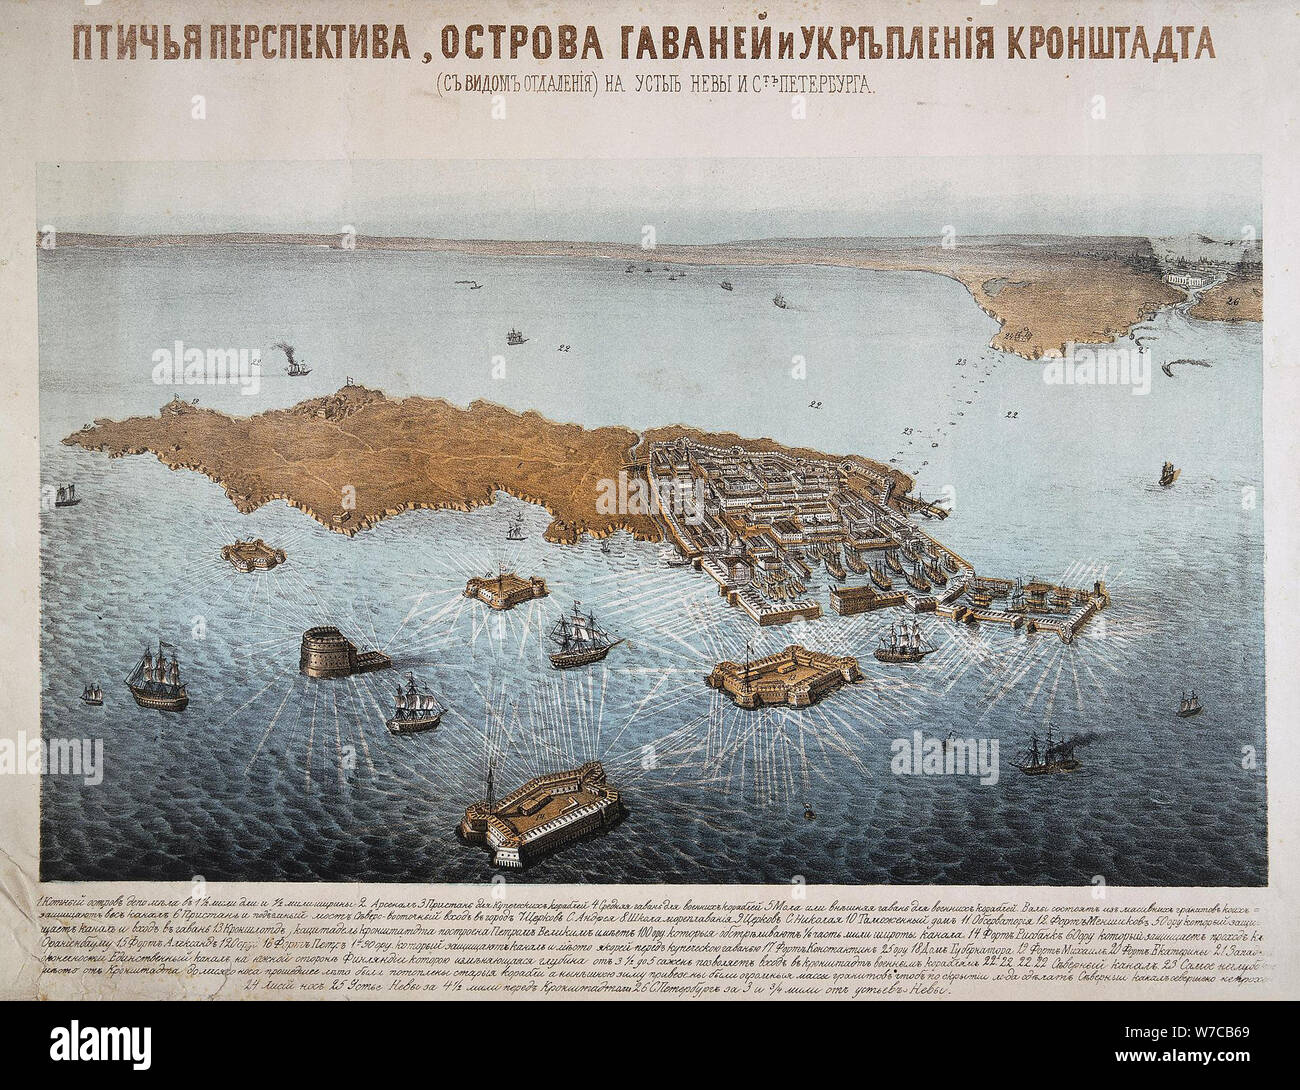 Der Blick aus der Vogelperspektive auf die Insel, den Hafen und die Befestigungsanlagen von Kronstadt, Mitte des 19. Cen.. Stockfoto